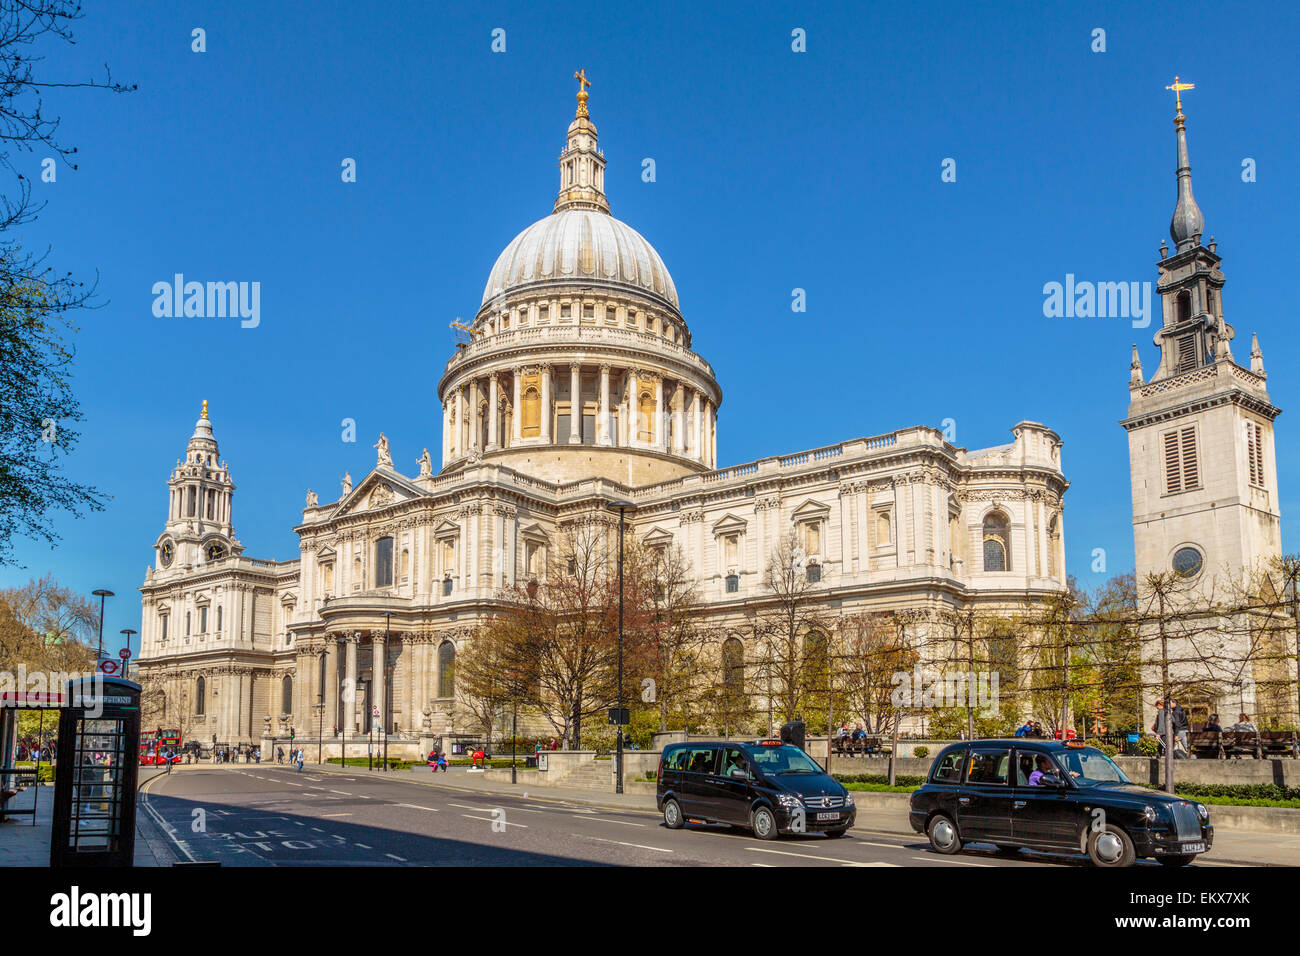 La Catedral de San Pablo muestra la fachada exterior este/oeste vista desde Cannon Street, en un día de primavera cielo azul claro en Londres Inglaterra Reino Unido Foto de stock